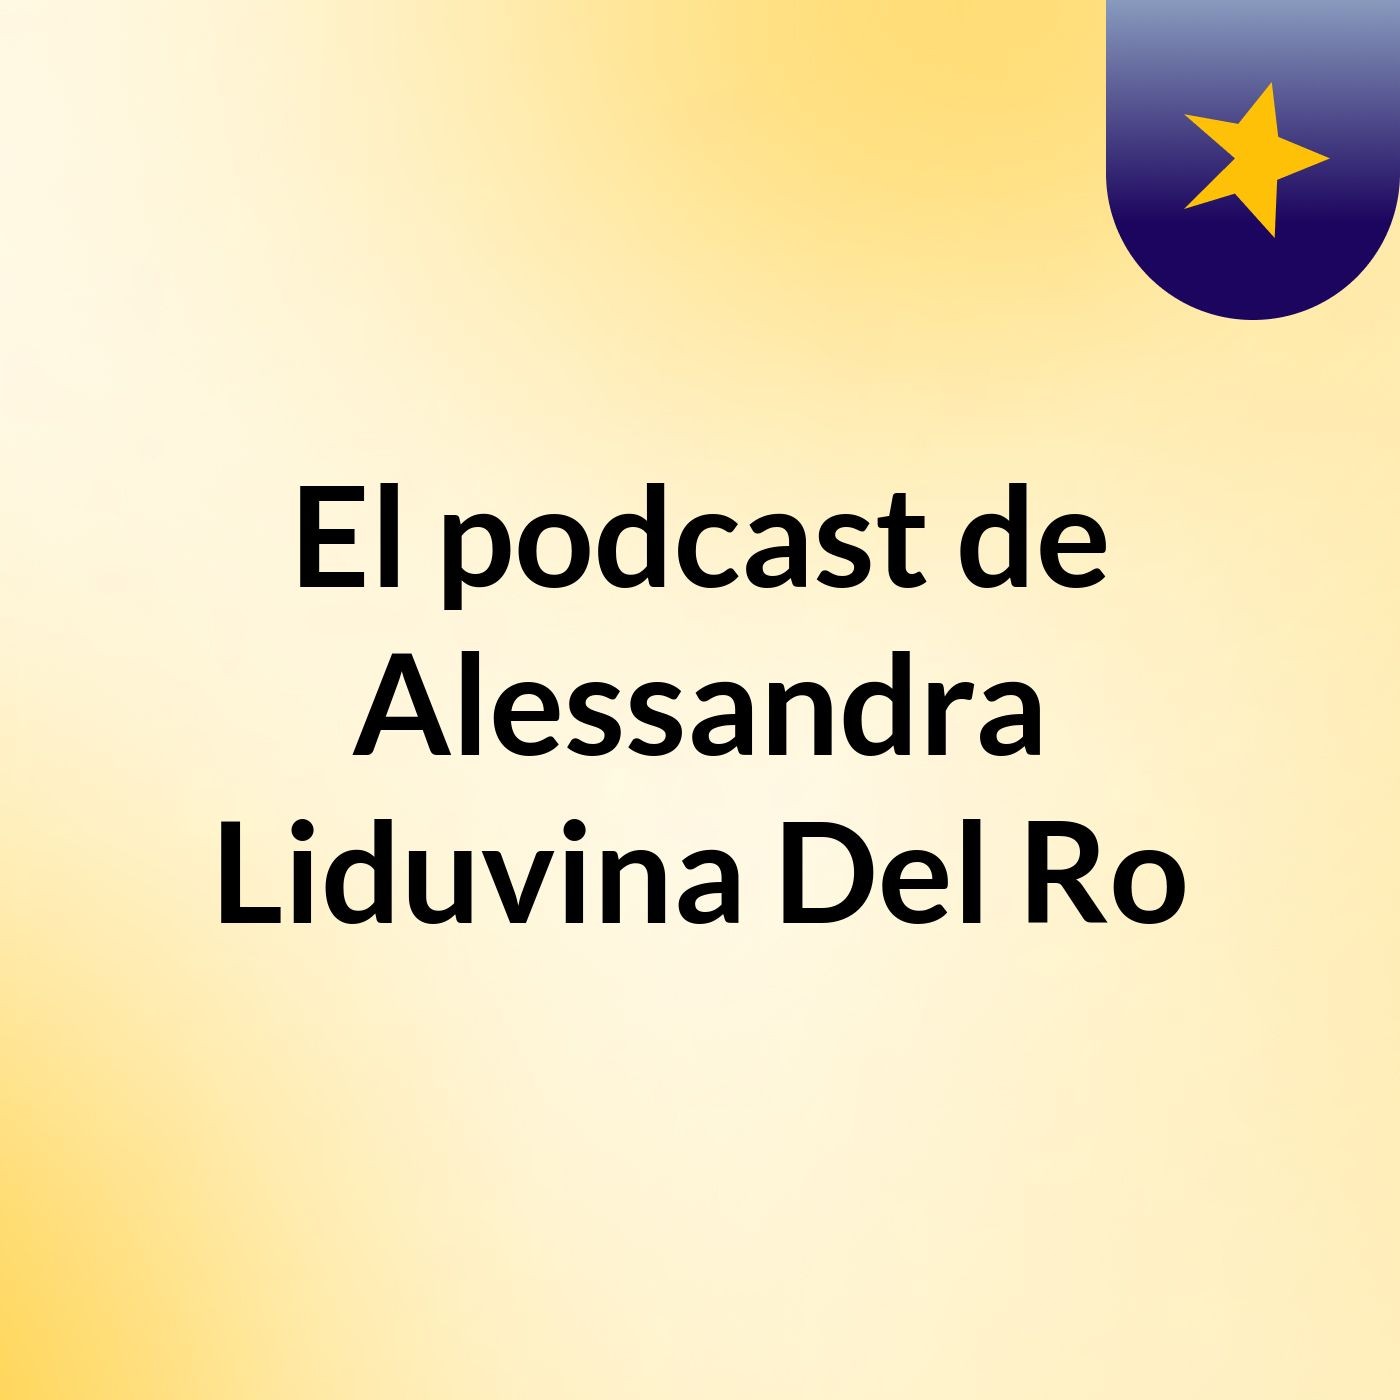 El podcast de Alessandra Liduvina Del Ro